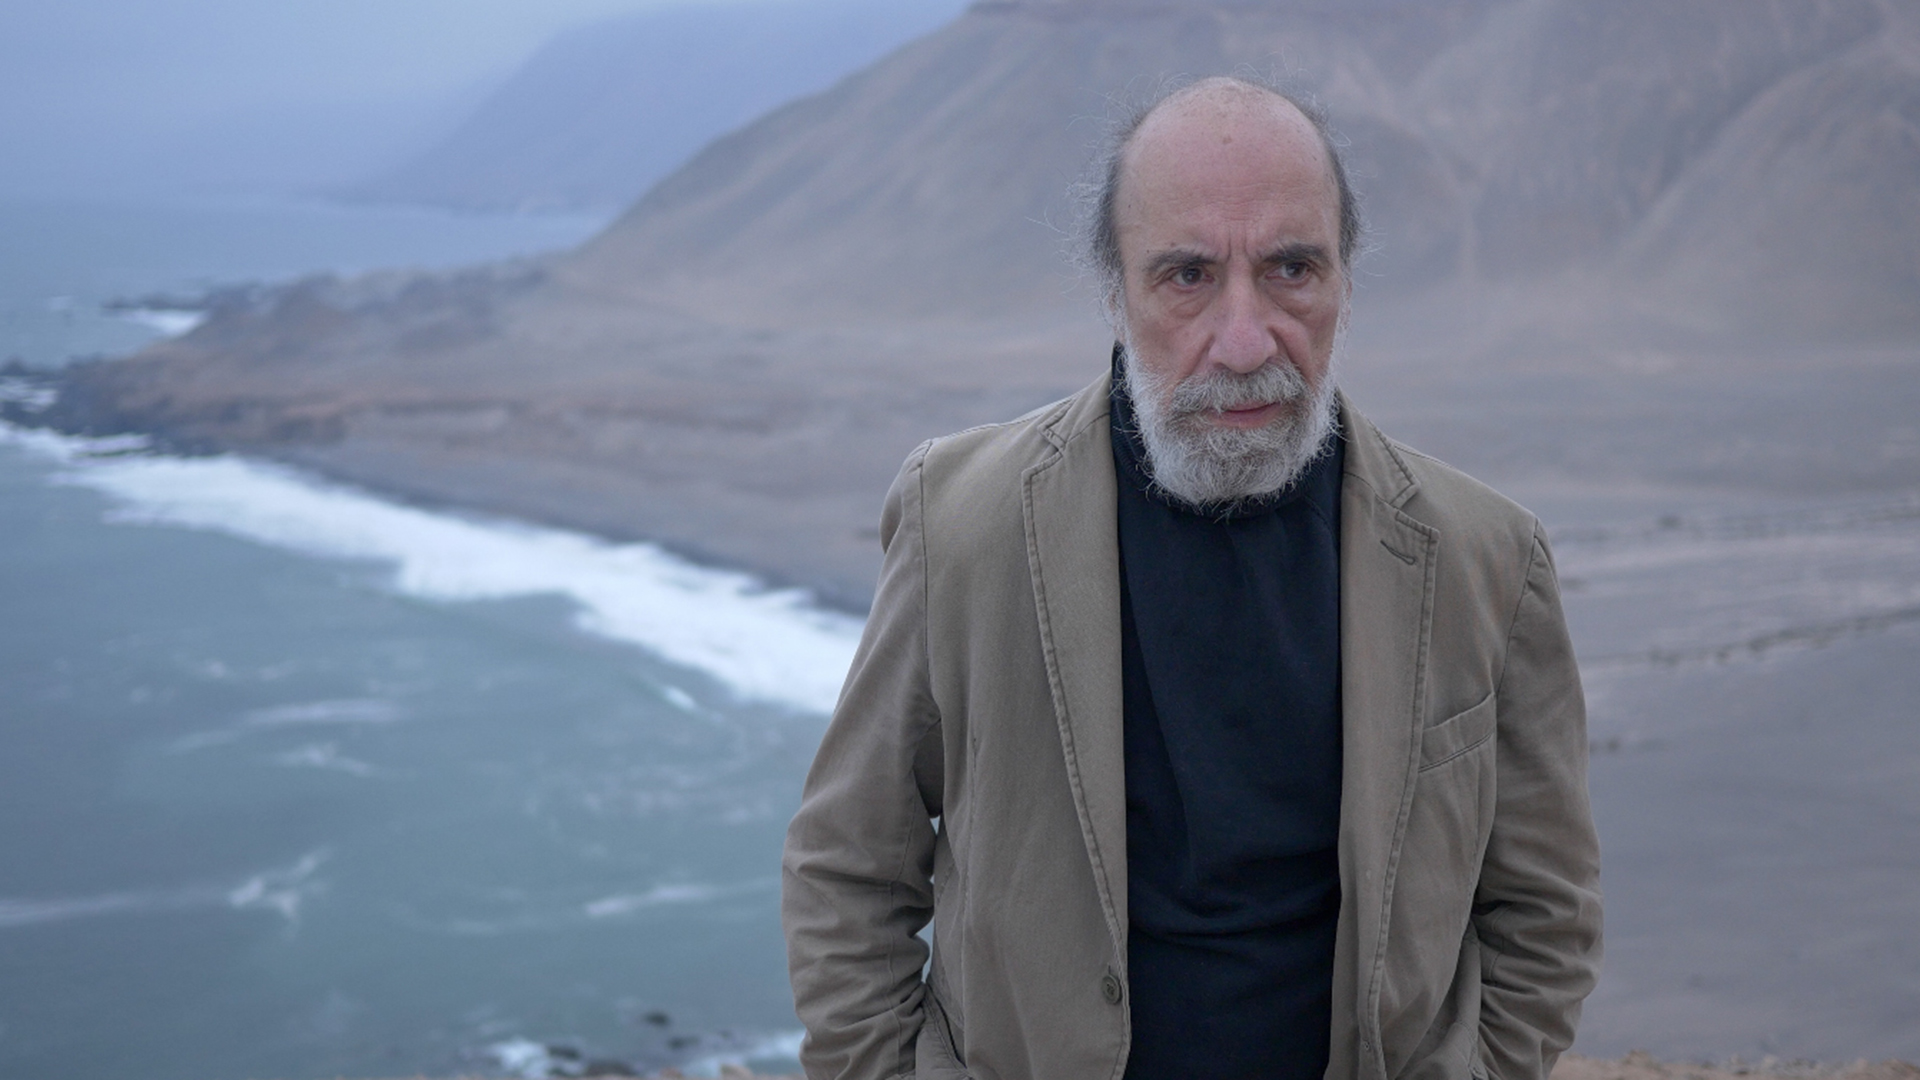  El poeta chileno Raúl Zurita, galardonado recientemente con el Premio Reina Sofía de Poesía Iberoamericana, el más importante reconocimiento de poesía en español y portugués (Prensa /mcl)
